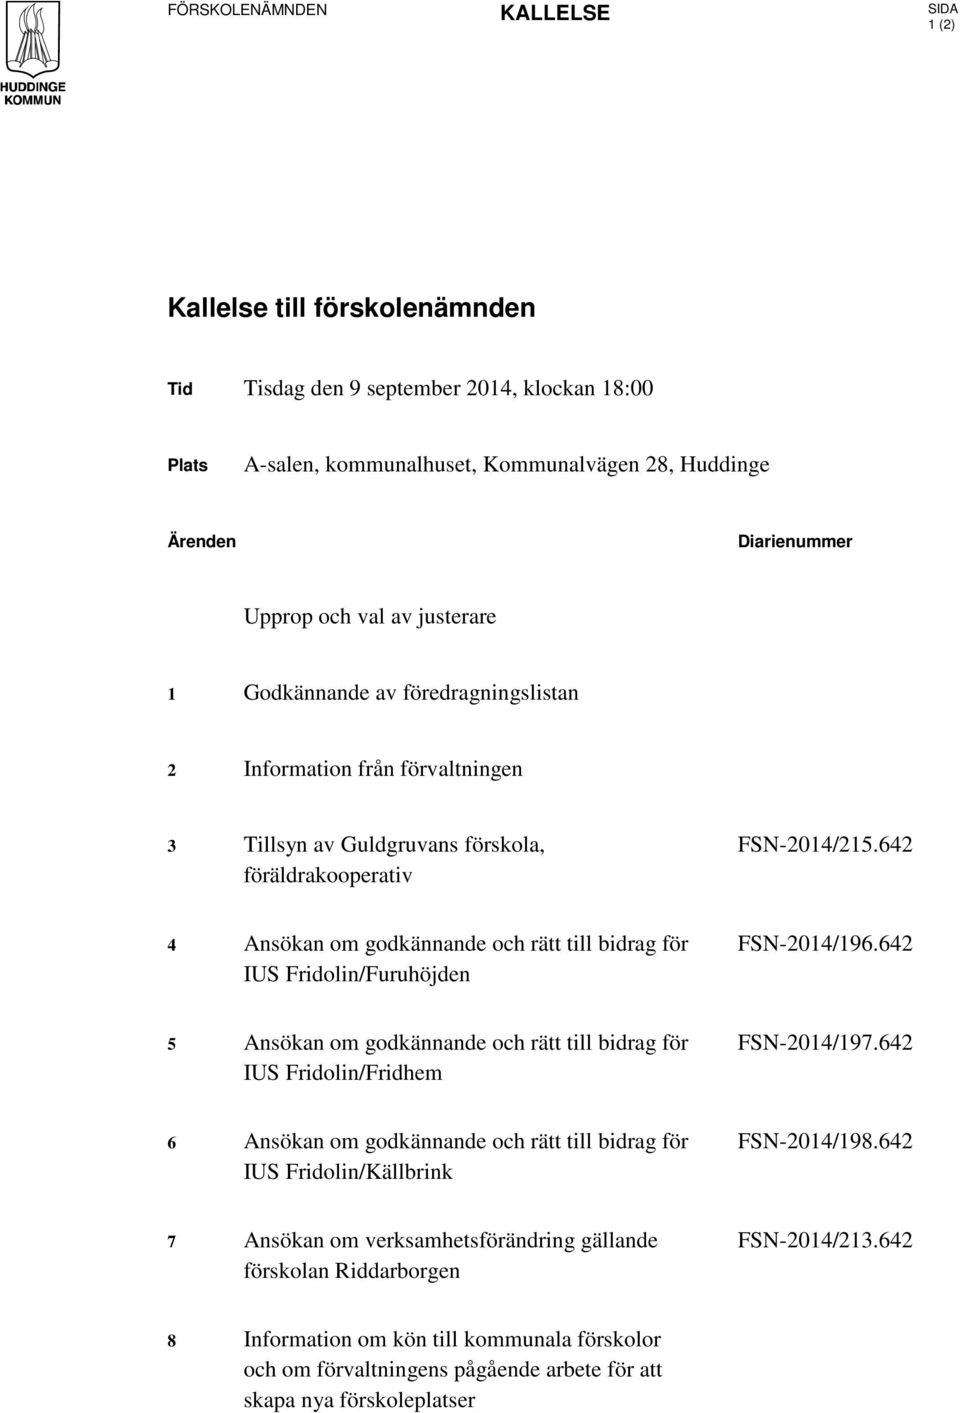 642 4 Ansökan om godkännande och rätt till bidrag för IUS Fridolin/Furuhöjden FSN-2014/196.642 5 Ansökan om godkännande och rätt till bidrag för IUS Fridolin/Fridhem FSN-2014/197.